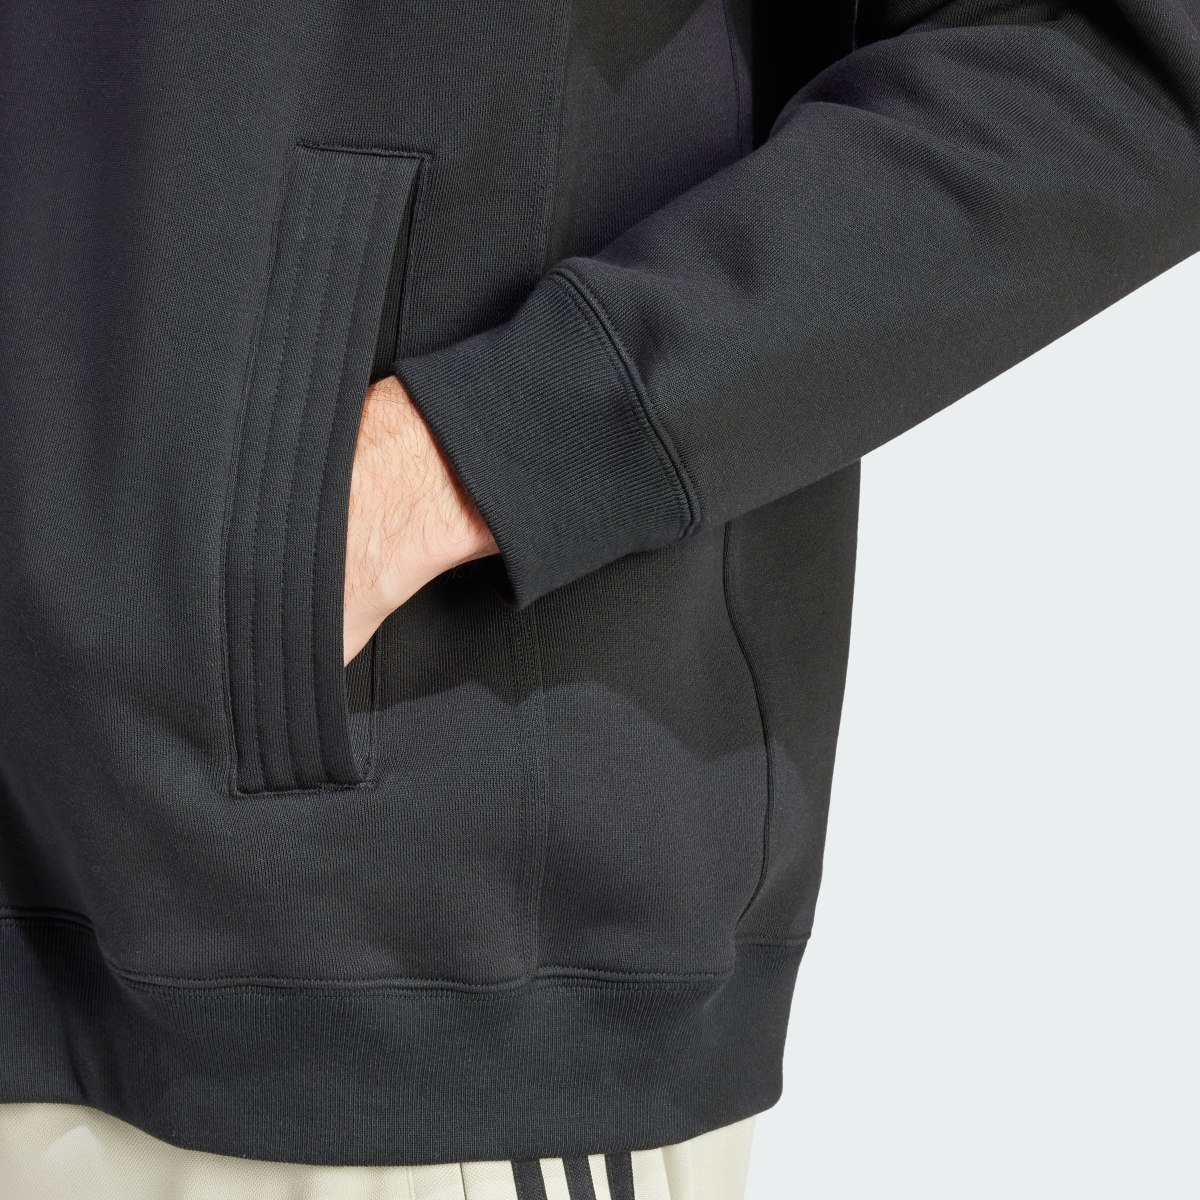 Adidas Lounge Fleece Bomber Jacket With Zip Opening. 7